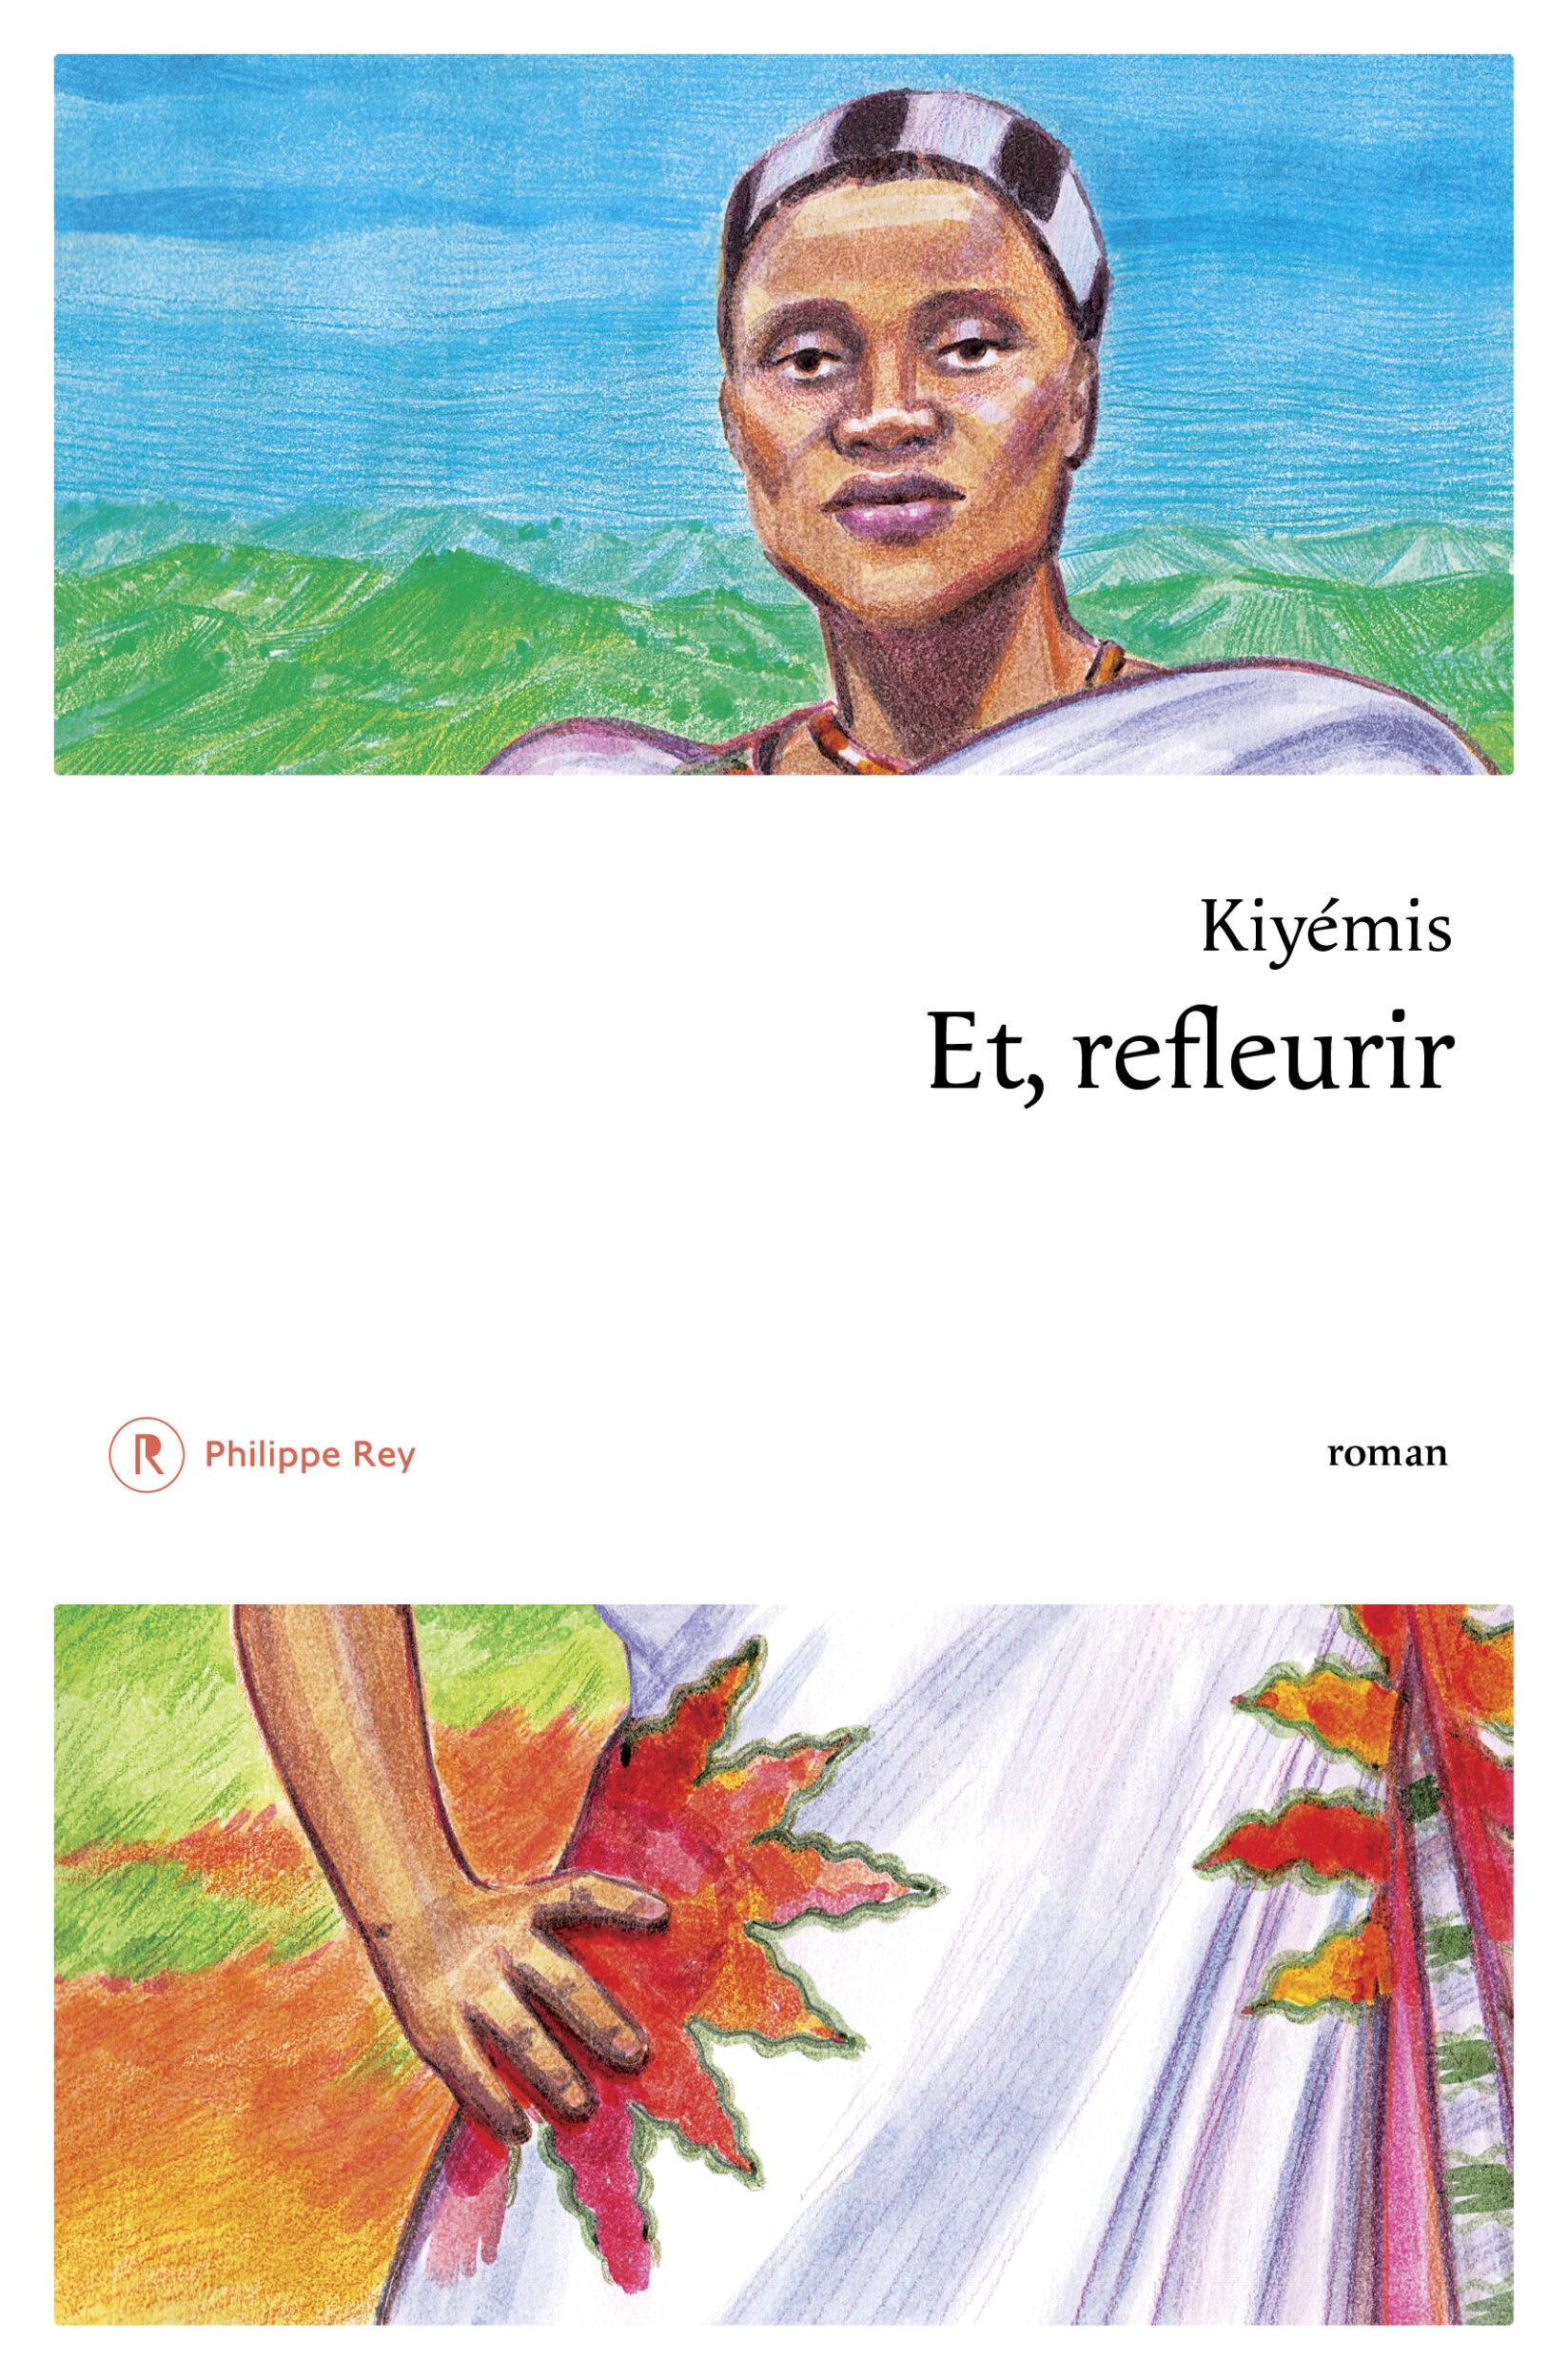 Couverture du livre "Et, refleurir" aux éditions Philippe Rey, illustrée par Iris Hatzfeld